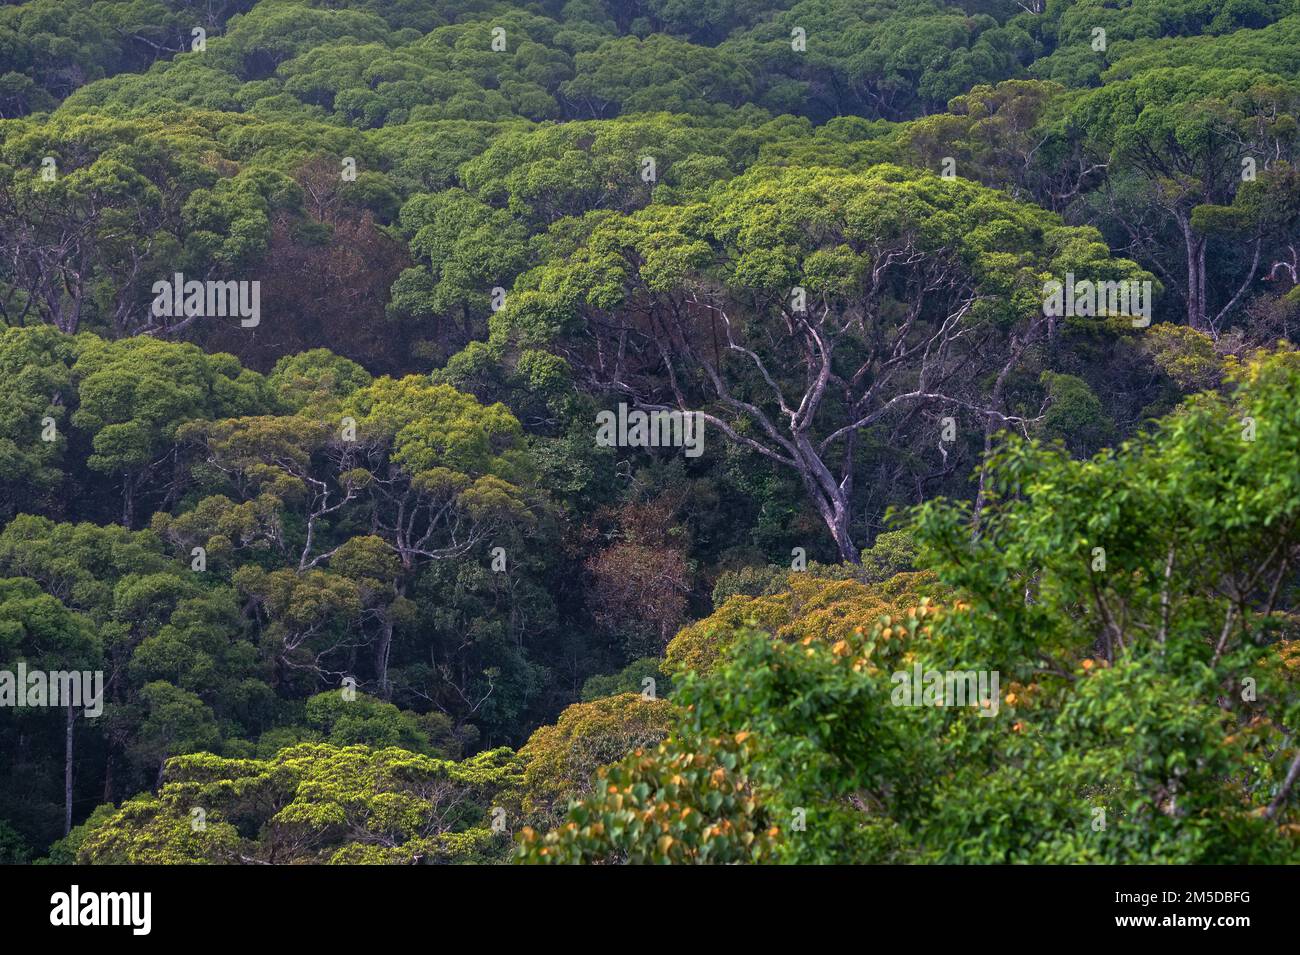 Vista panoramica della foresta pluviale Sinharaja in Sri Lanka Foto Stock